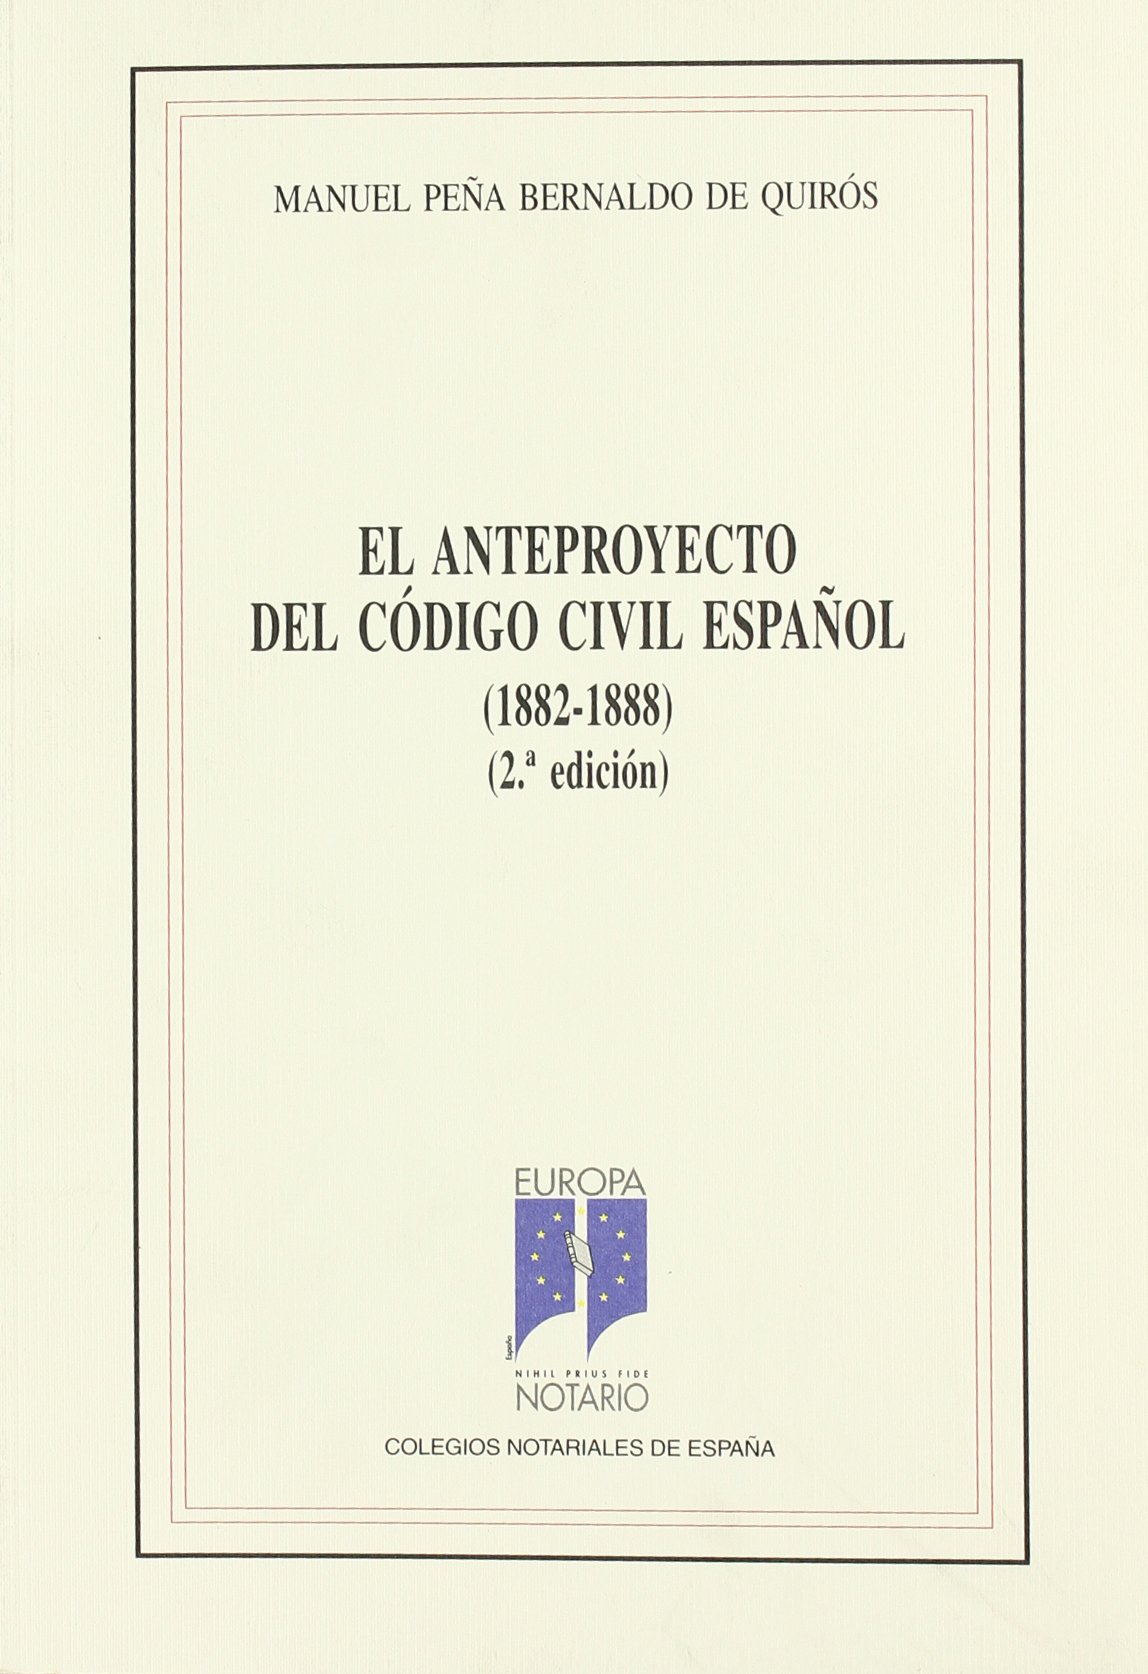 El anteproyecto del Código Civil español (1882-1888)